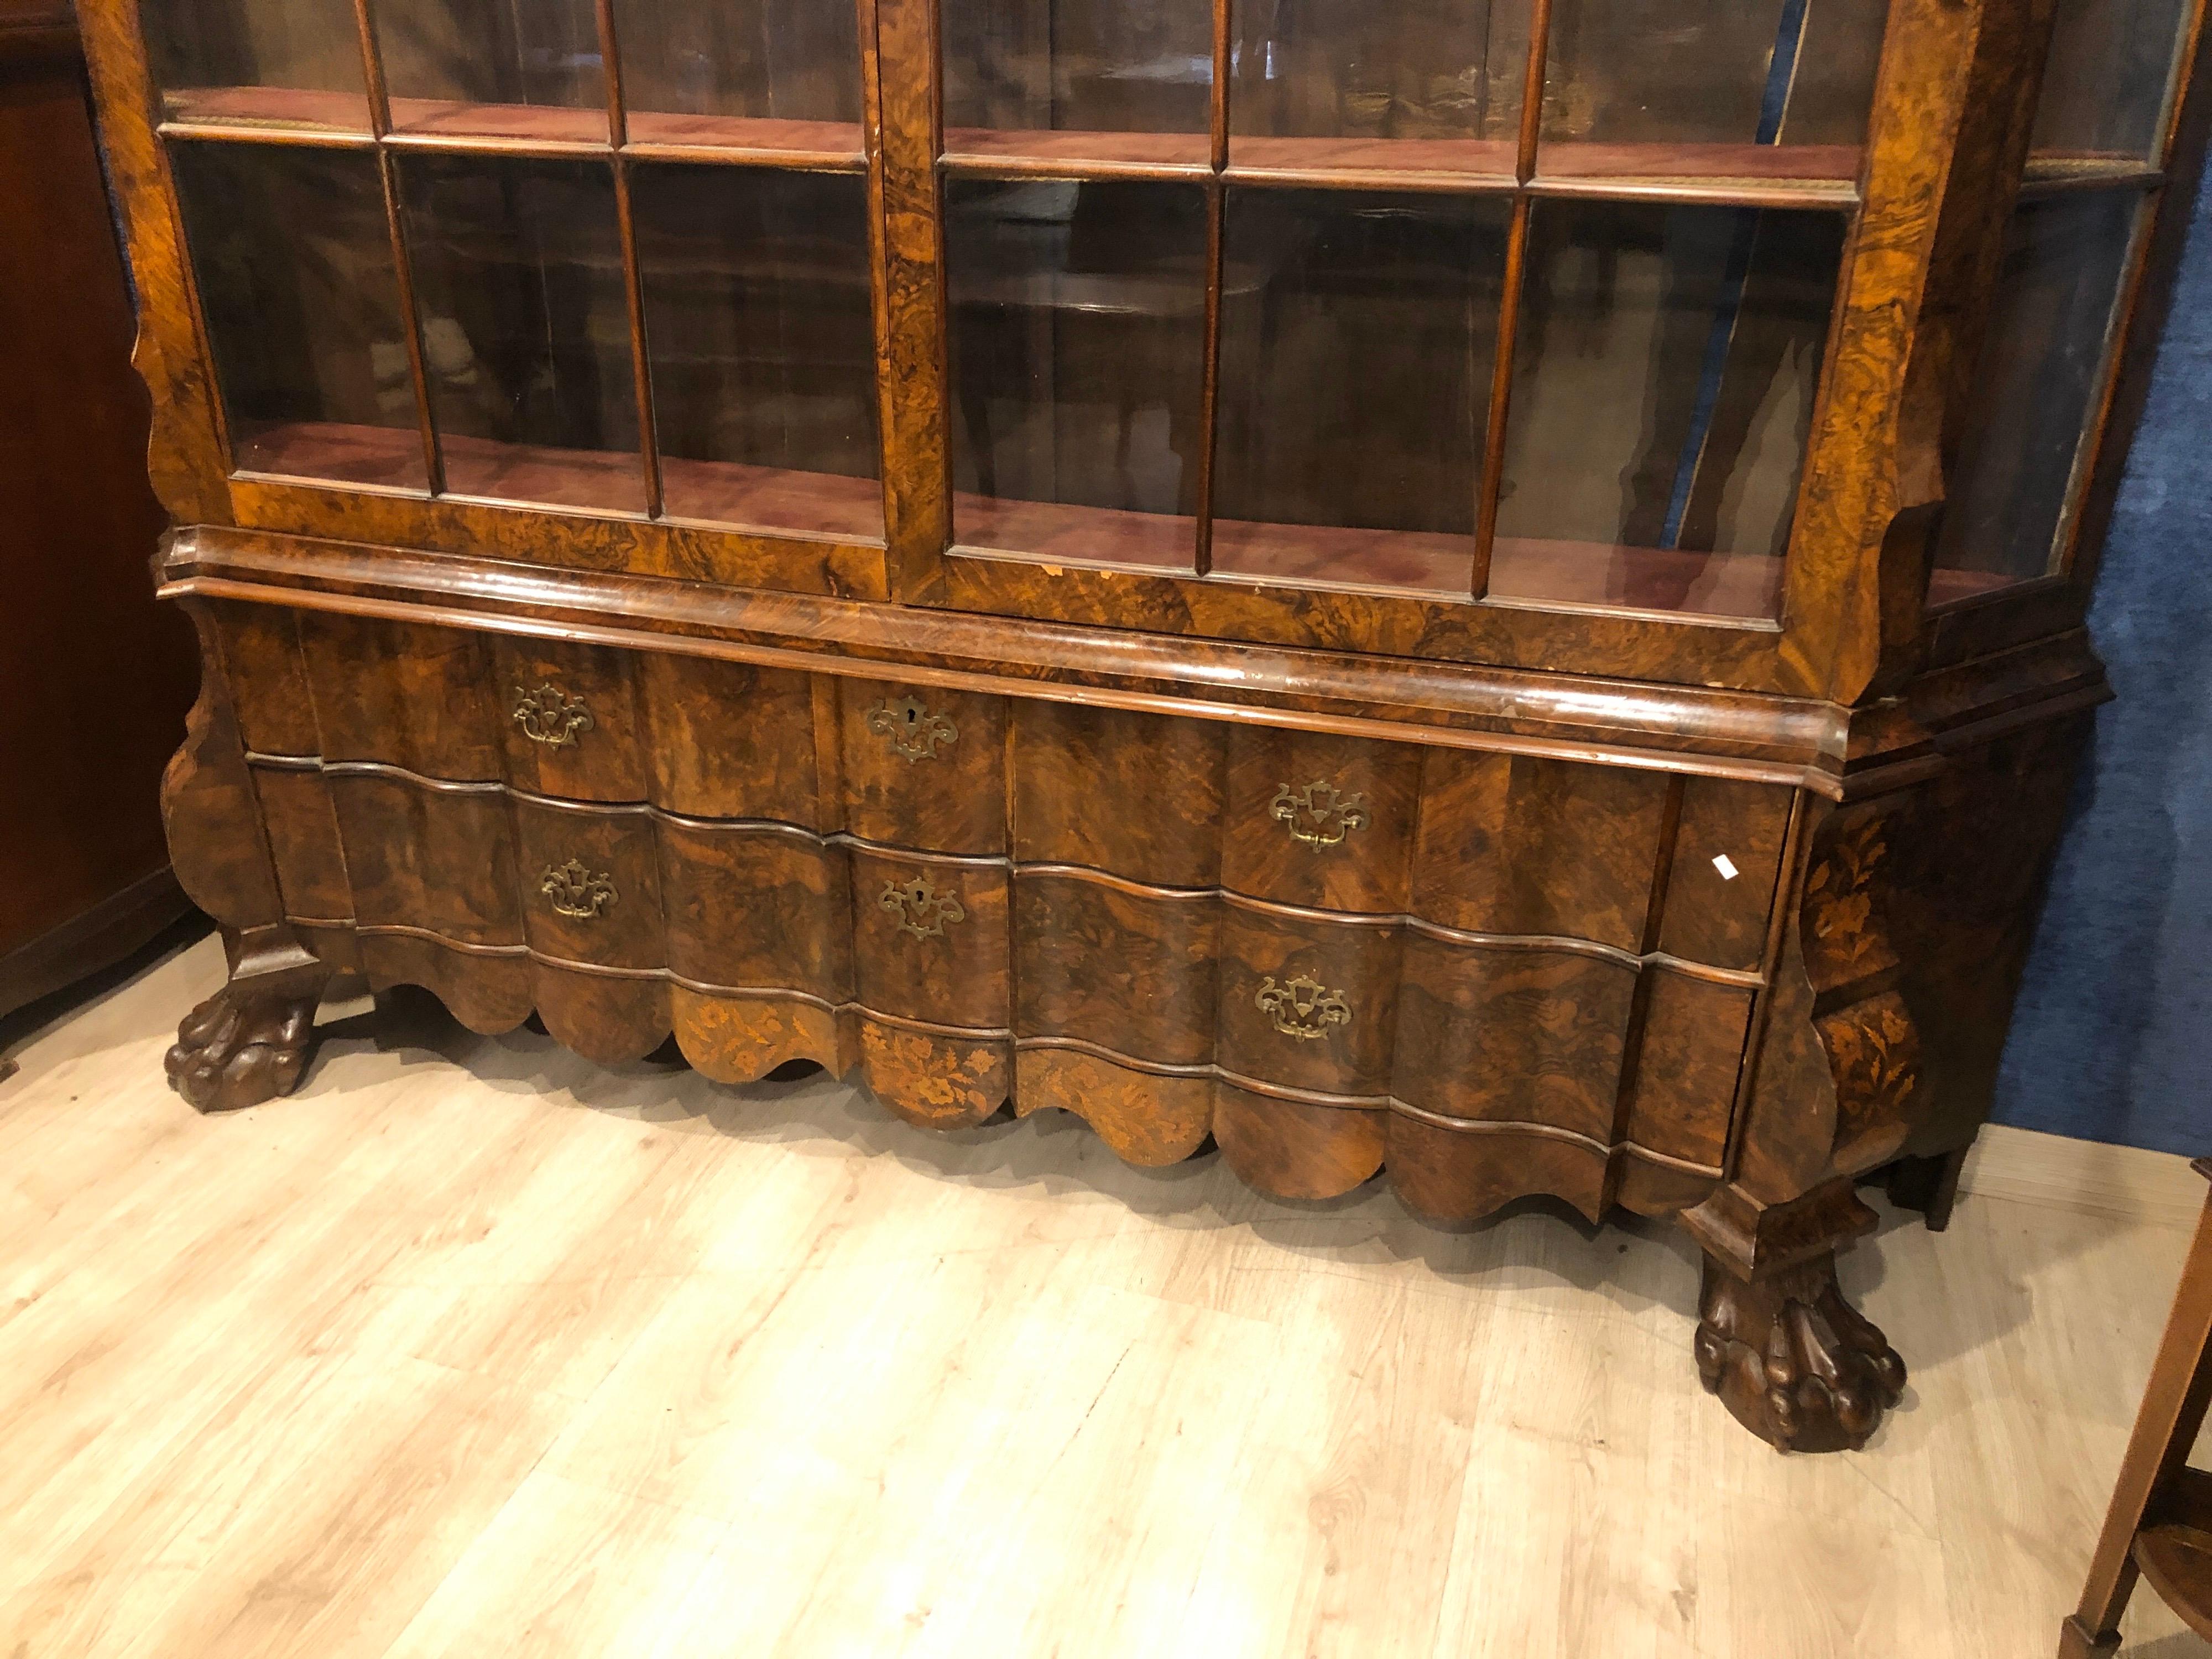 Niederländische Möbel von großem Wert, auf der Vorderseite der Schubladen bewegt, zarte Intarsien auf nur einige Teile der Möbel, Charles X-Ära (ca. 1830), sondern in Louis XVI-Stil, in Nussbaum Bruyère Holz, restauriert werden und einige Gläser